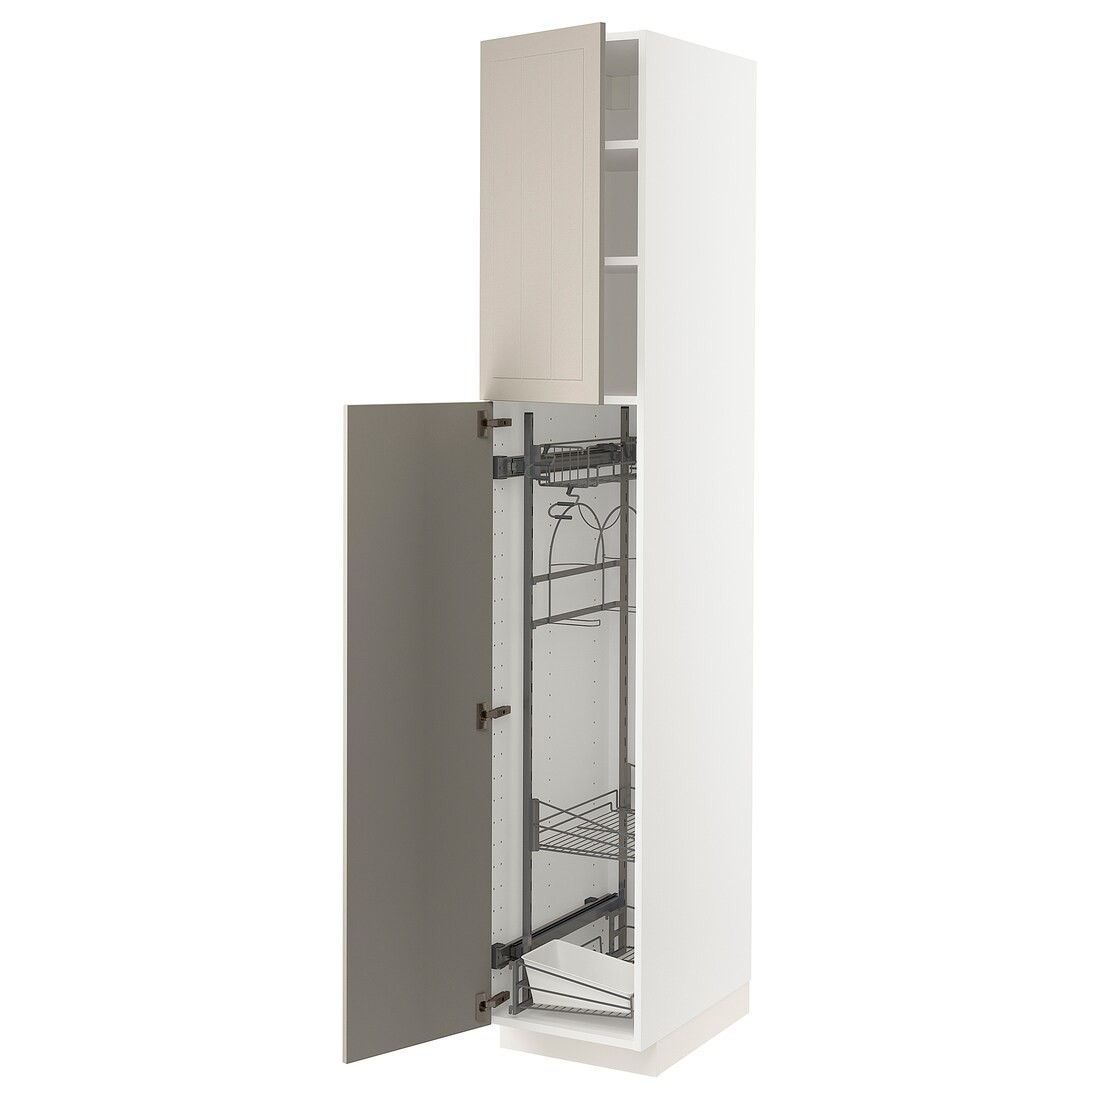 METOD МЕТОД Висока шафа з відділенням для аксесуарів для прибирання, білий / Stensund бежевий, 40x60x220 см